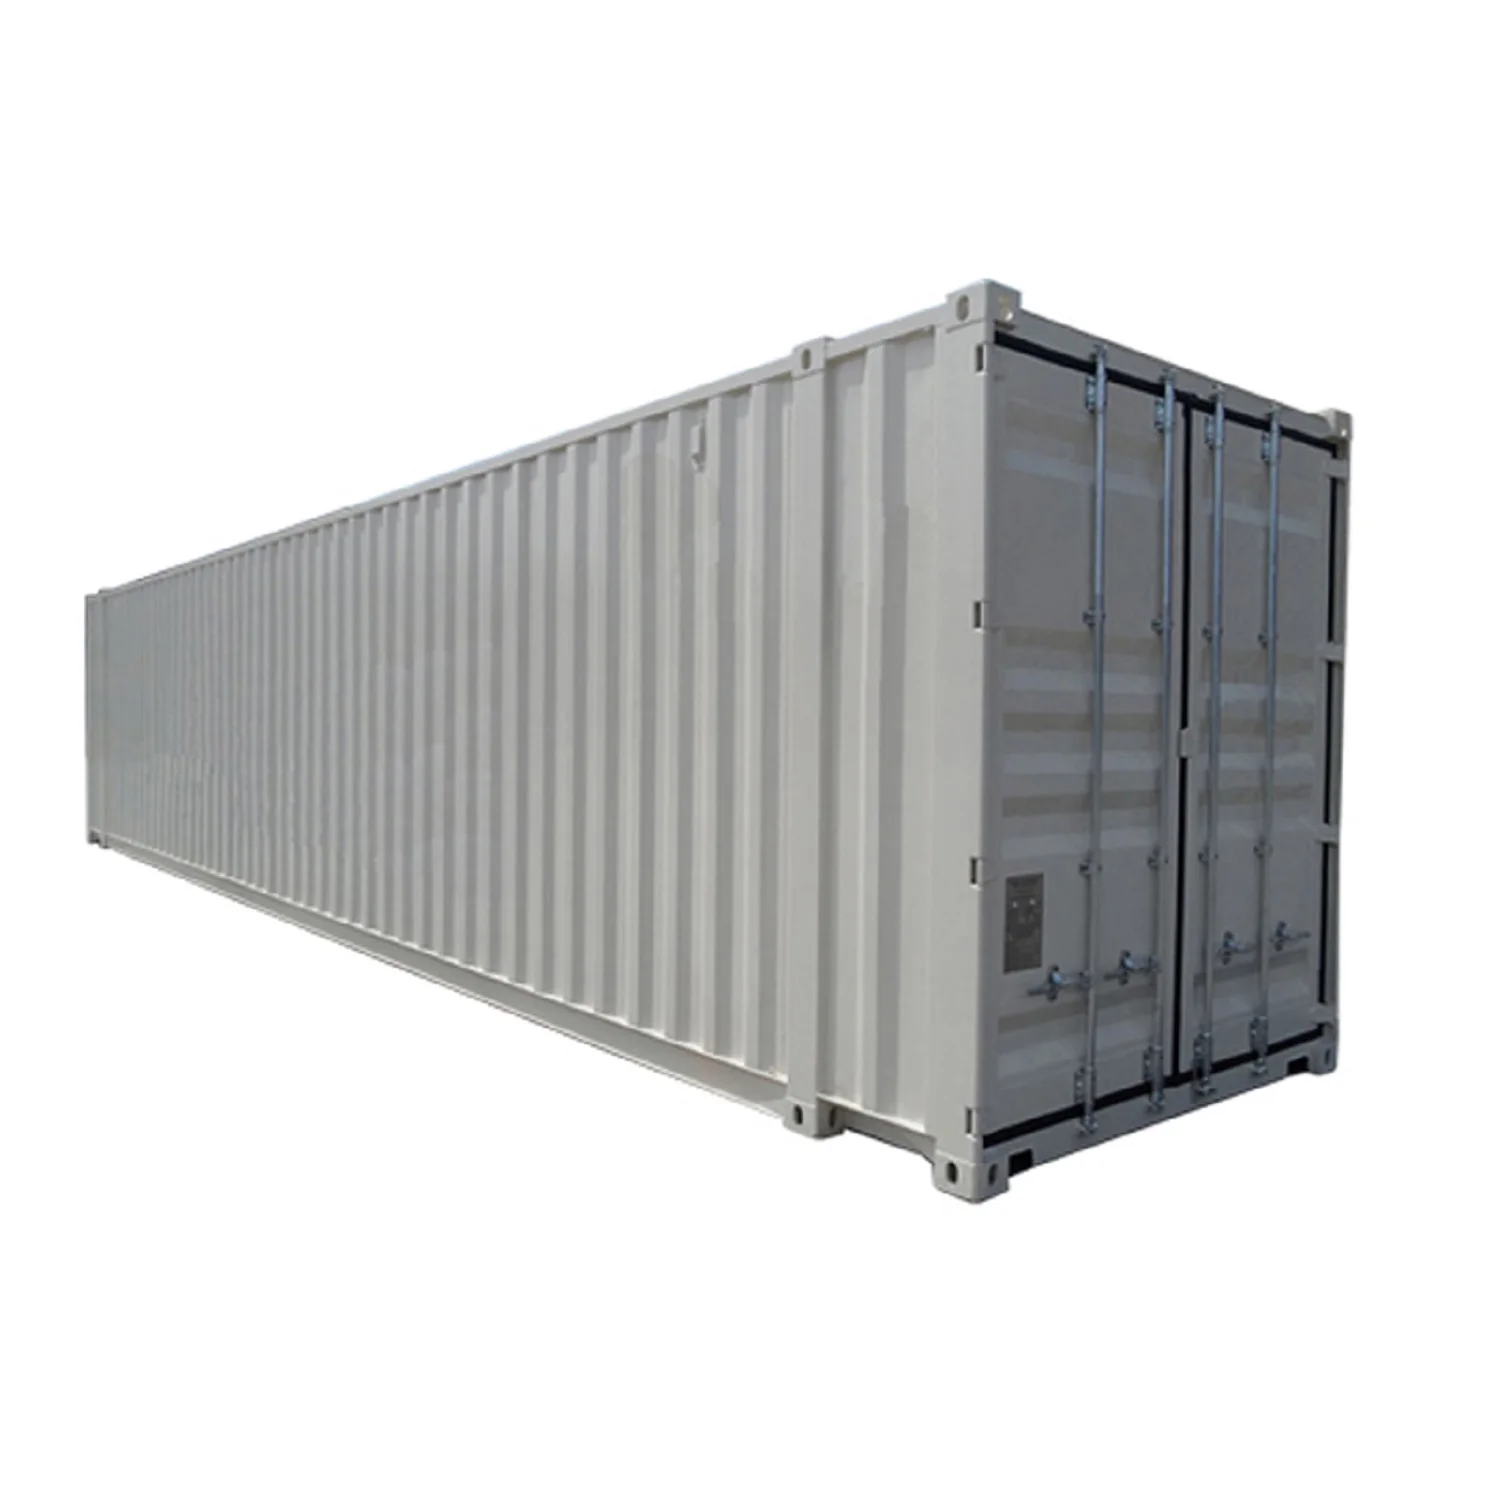 80 Футовый контейнер. 45 GP контейнер. Металлический контейнер с боковым открытием. Super High Cube.